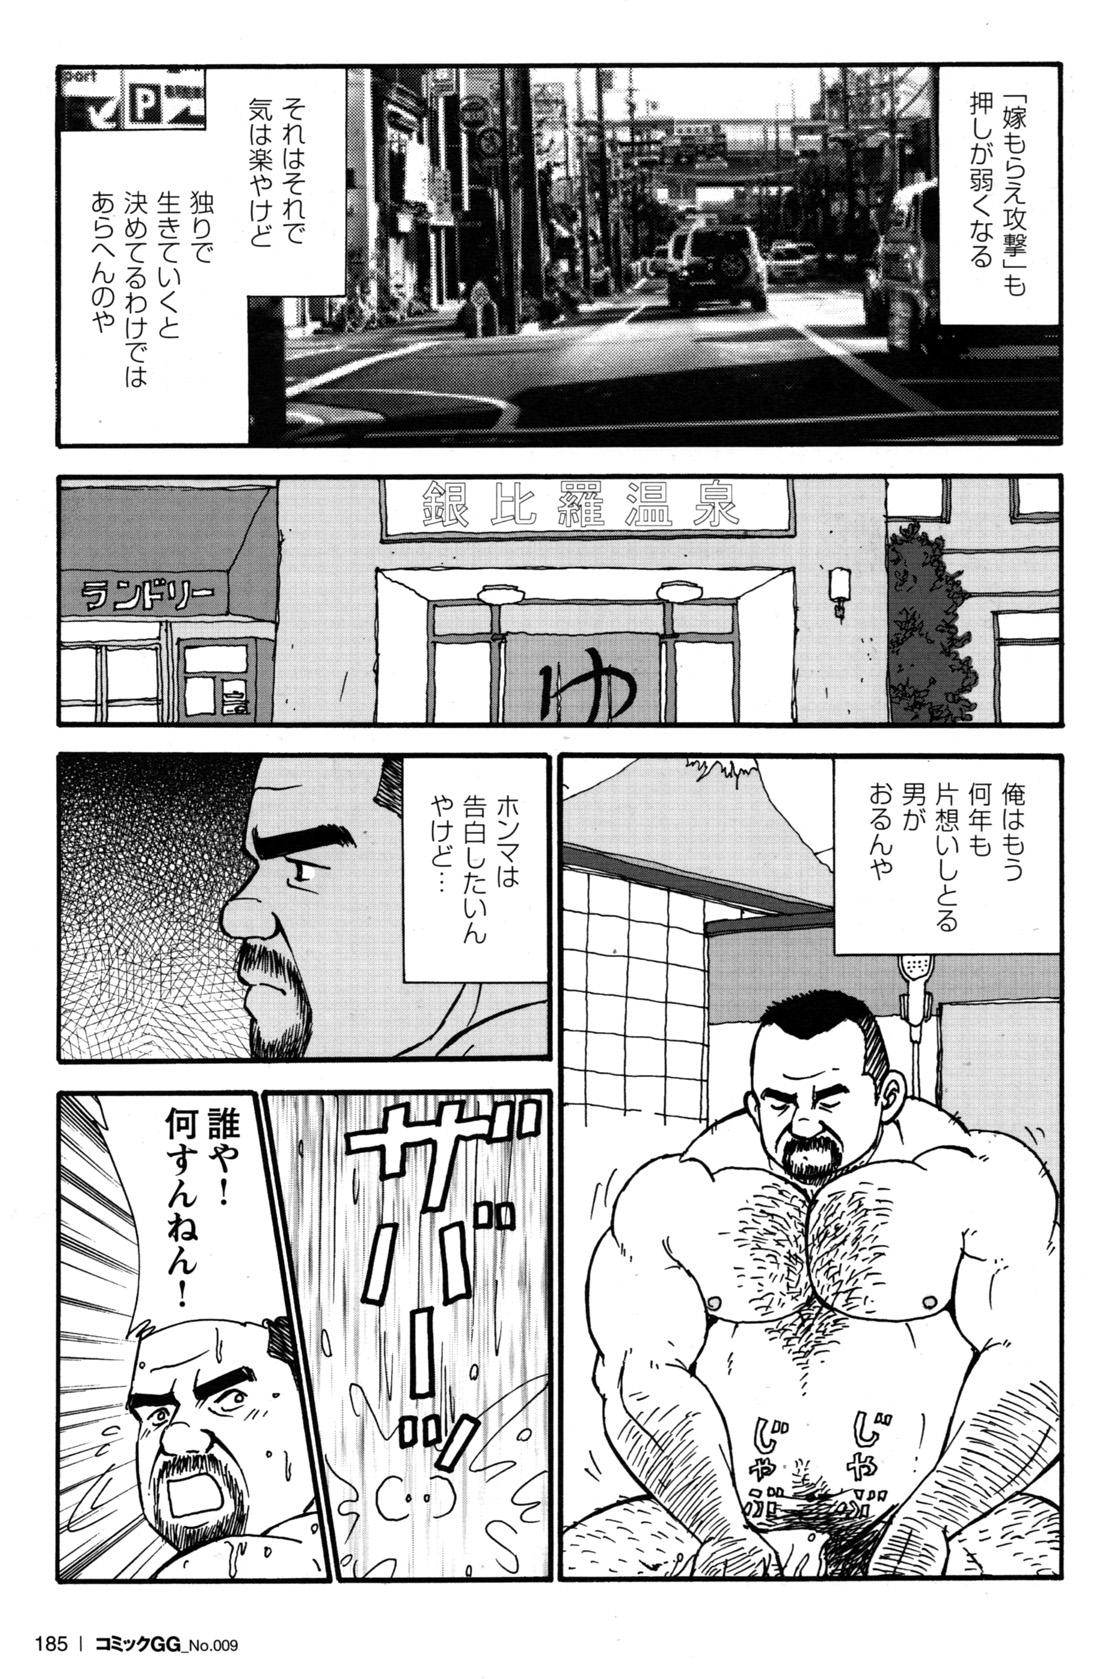 Comic G-men Gaho No.09 Gacchibi Zeme 167